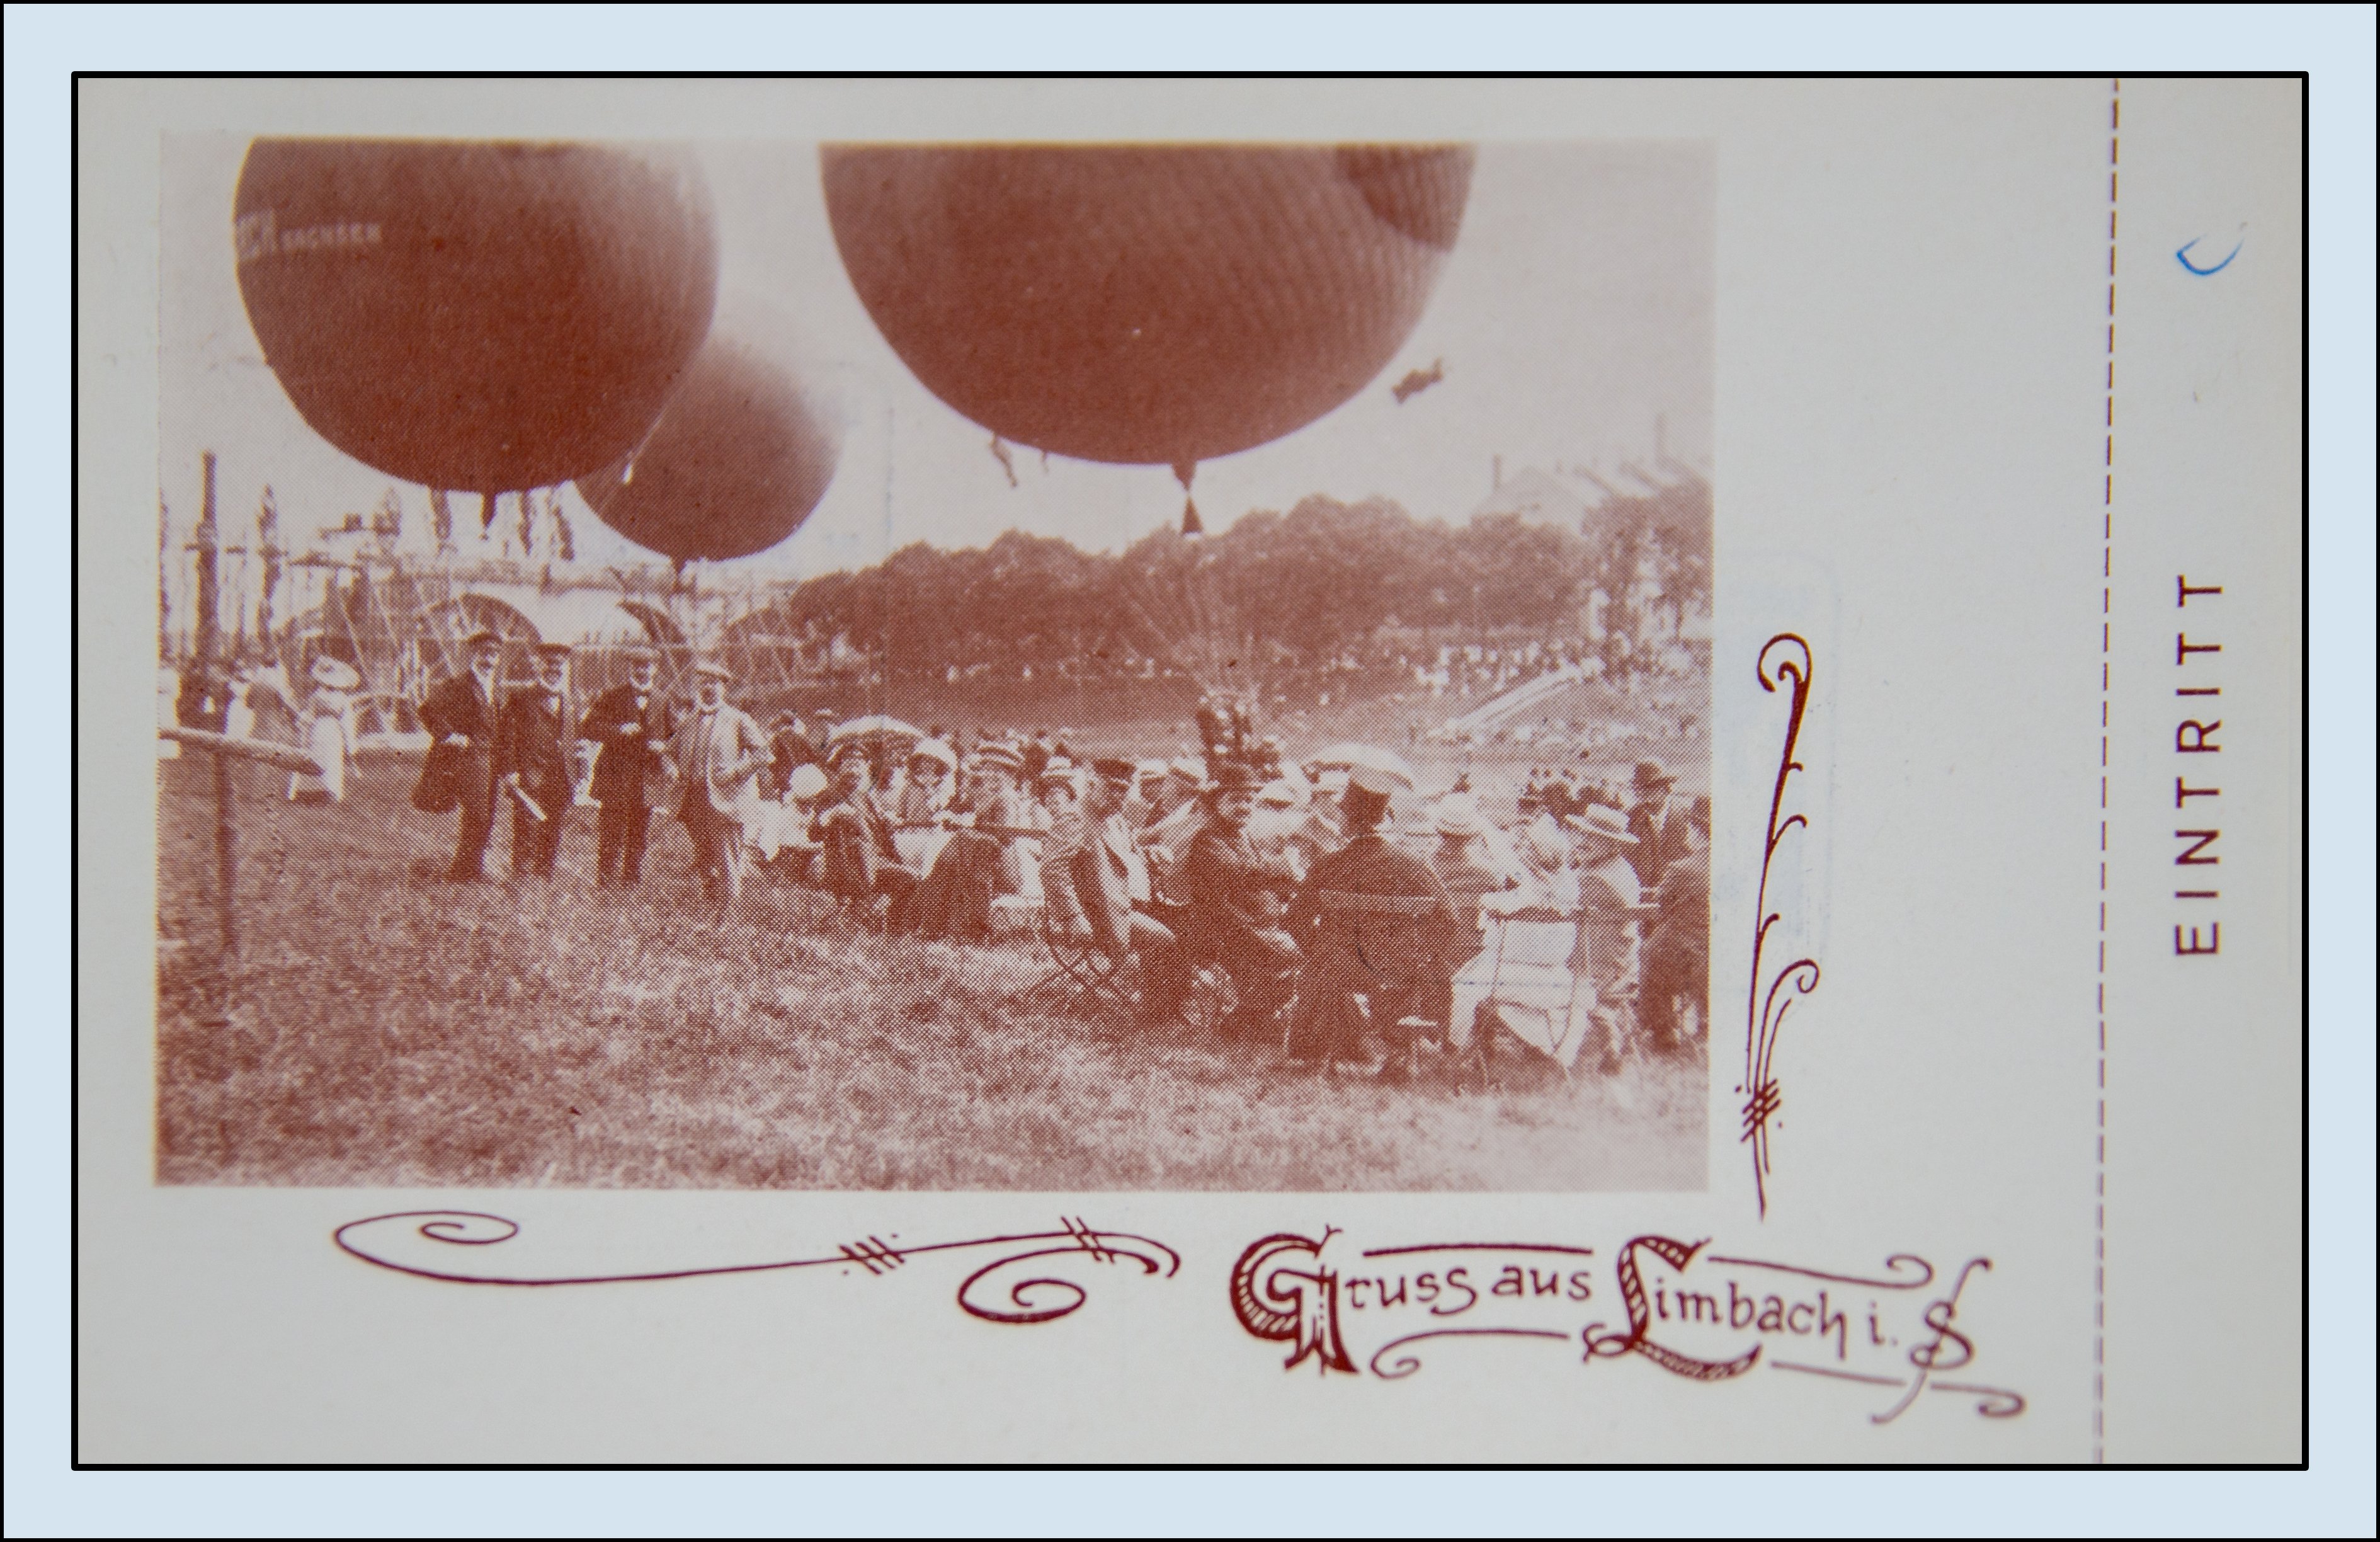 Ansichtskarte (Reprint) "Ballonaufstieg Limbach Mai 1914", Sonderstempel Limbach-Oberfrohna 1, 3. Regionale Briefmarkenausstellung, Abbildung Ballon,  (Verkehrsmuseum Dresden CC BY-NC-SA)